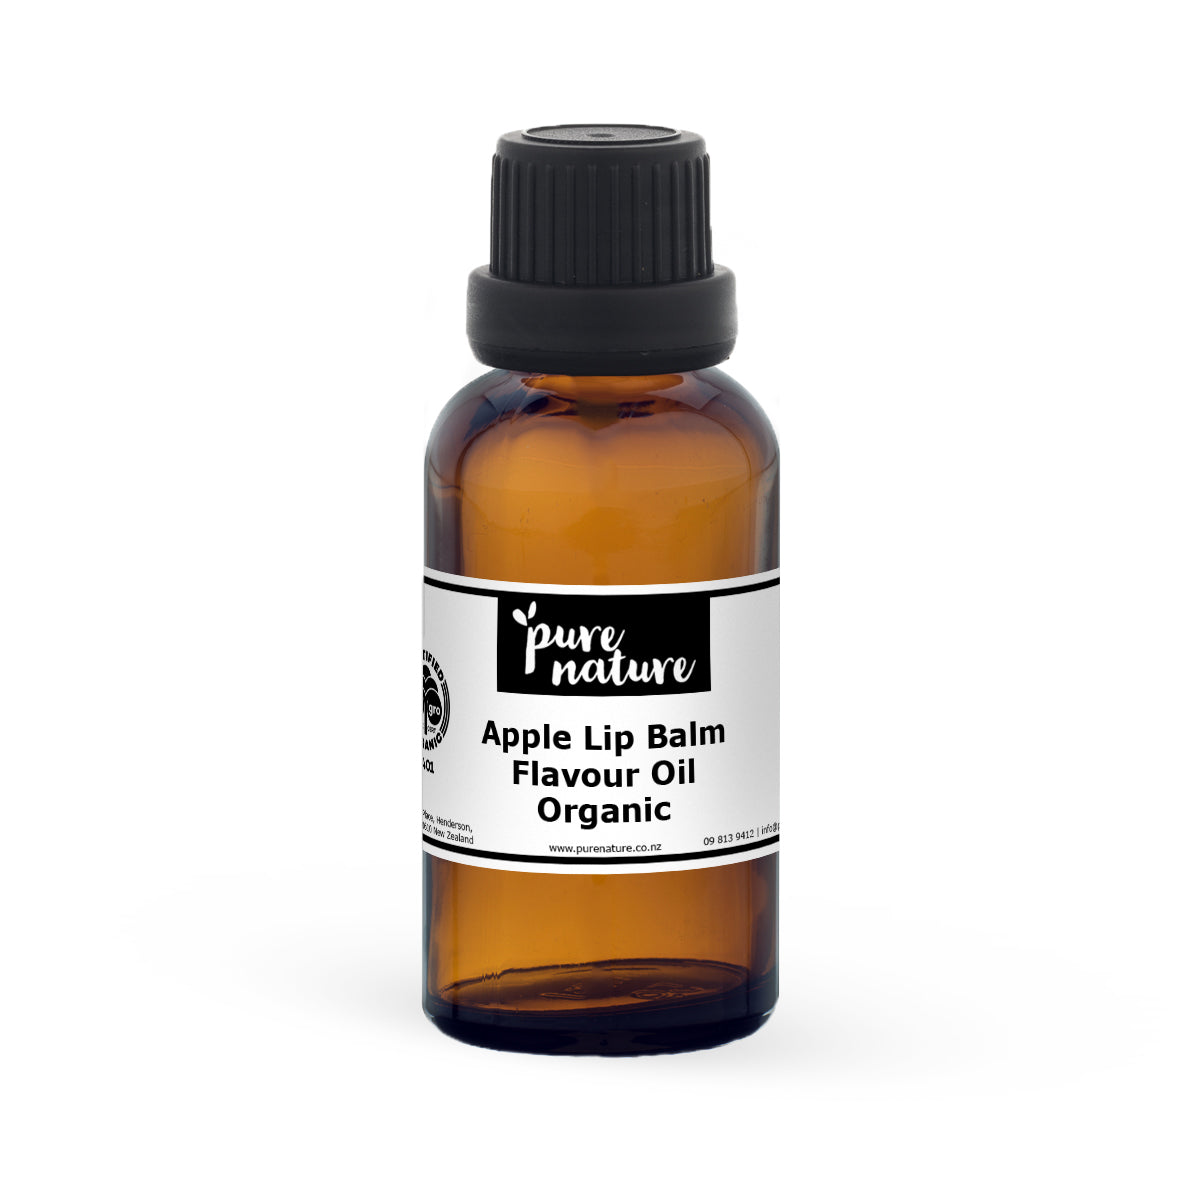 Apple Lip Balm Flavour Oil - Organic 30ml